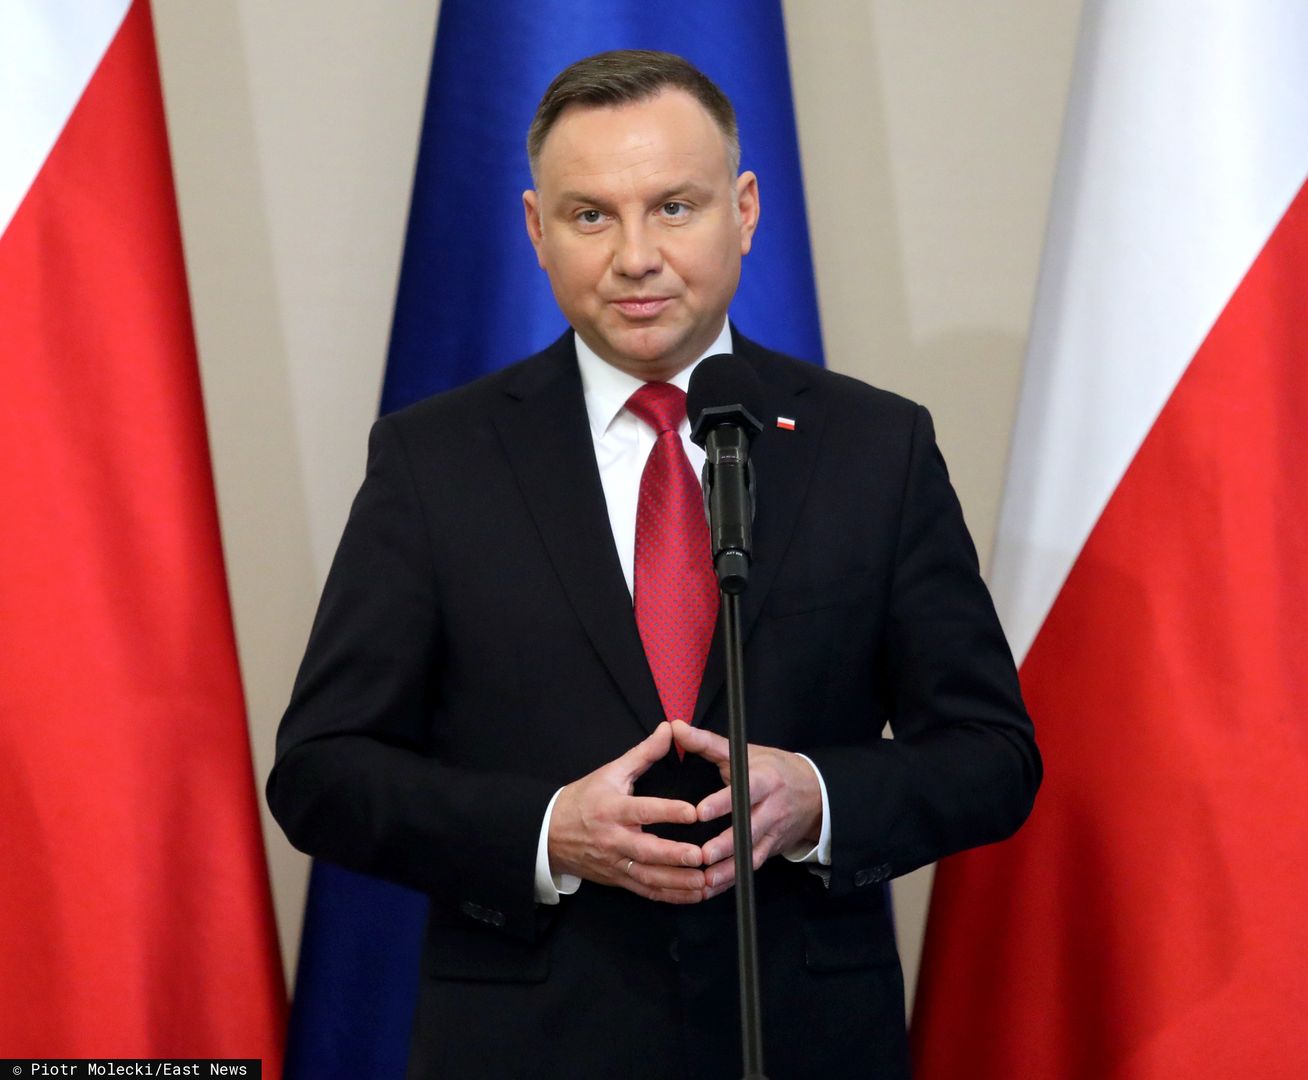 Według sondaży Andrzej Duda jest faworytem wyborów prezydenckich